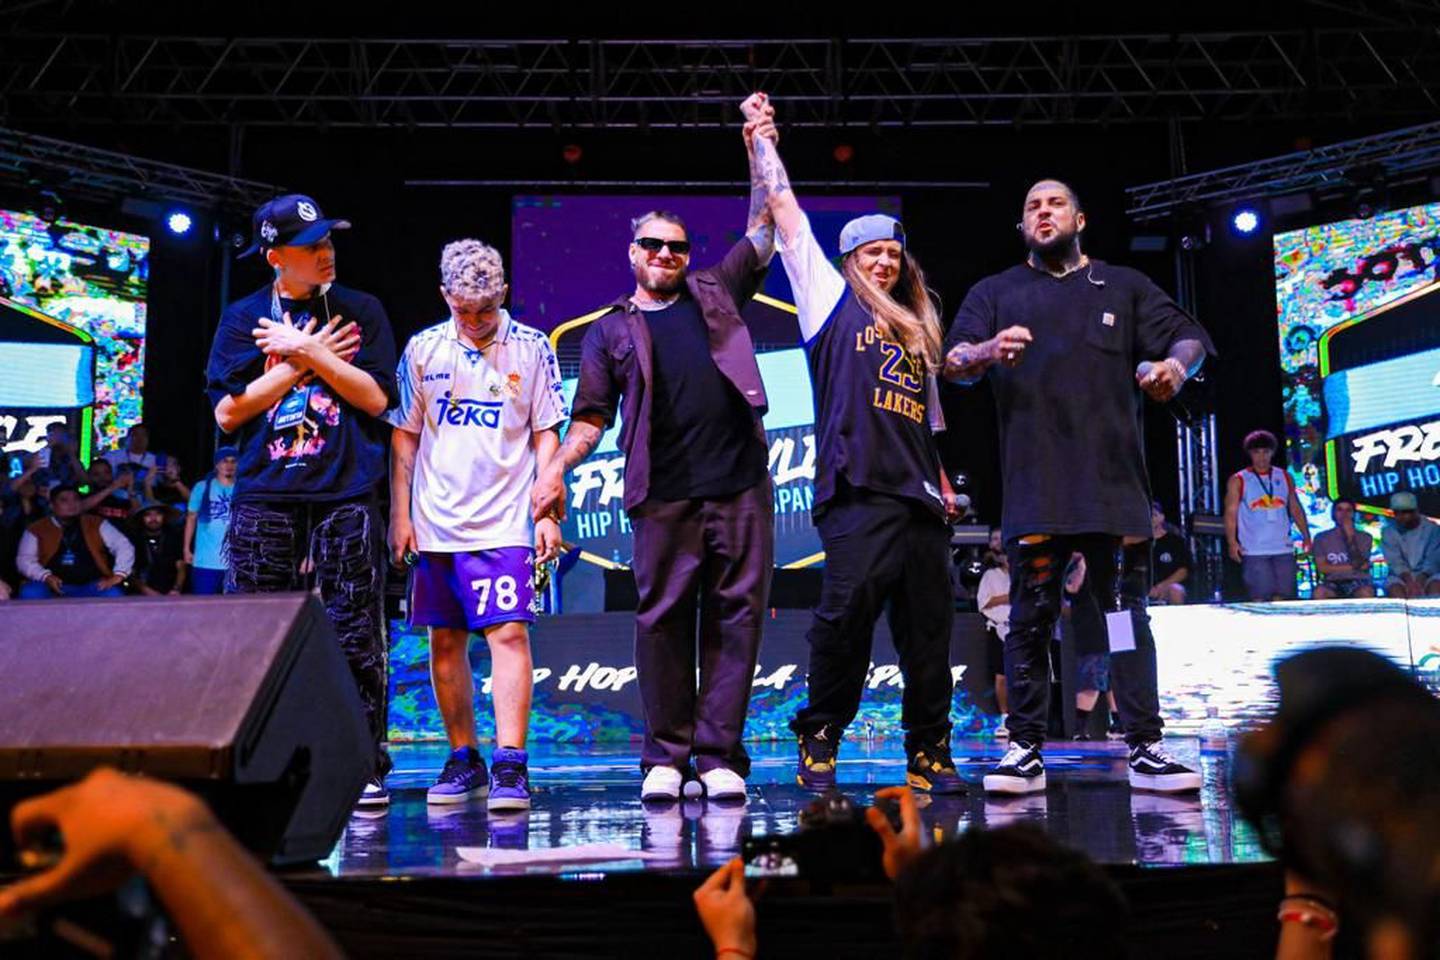 El rapero costarricense Eros EQ quedó campeón del torneo 4H Hip-hop de El Salvador, junto al mexicano Lobo Estepario.